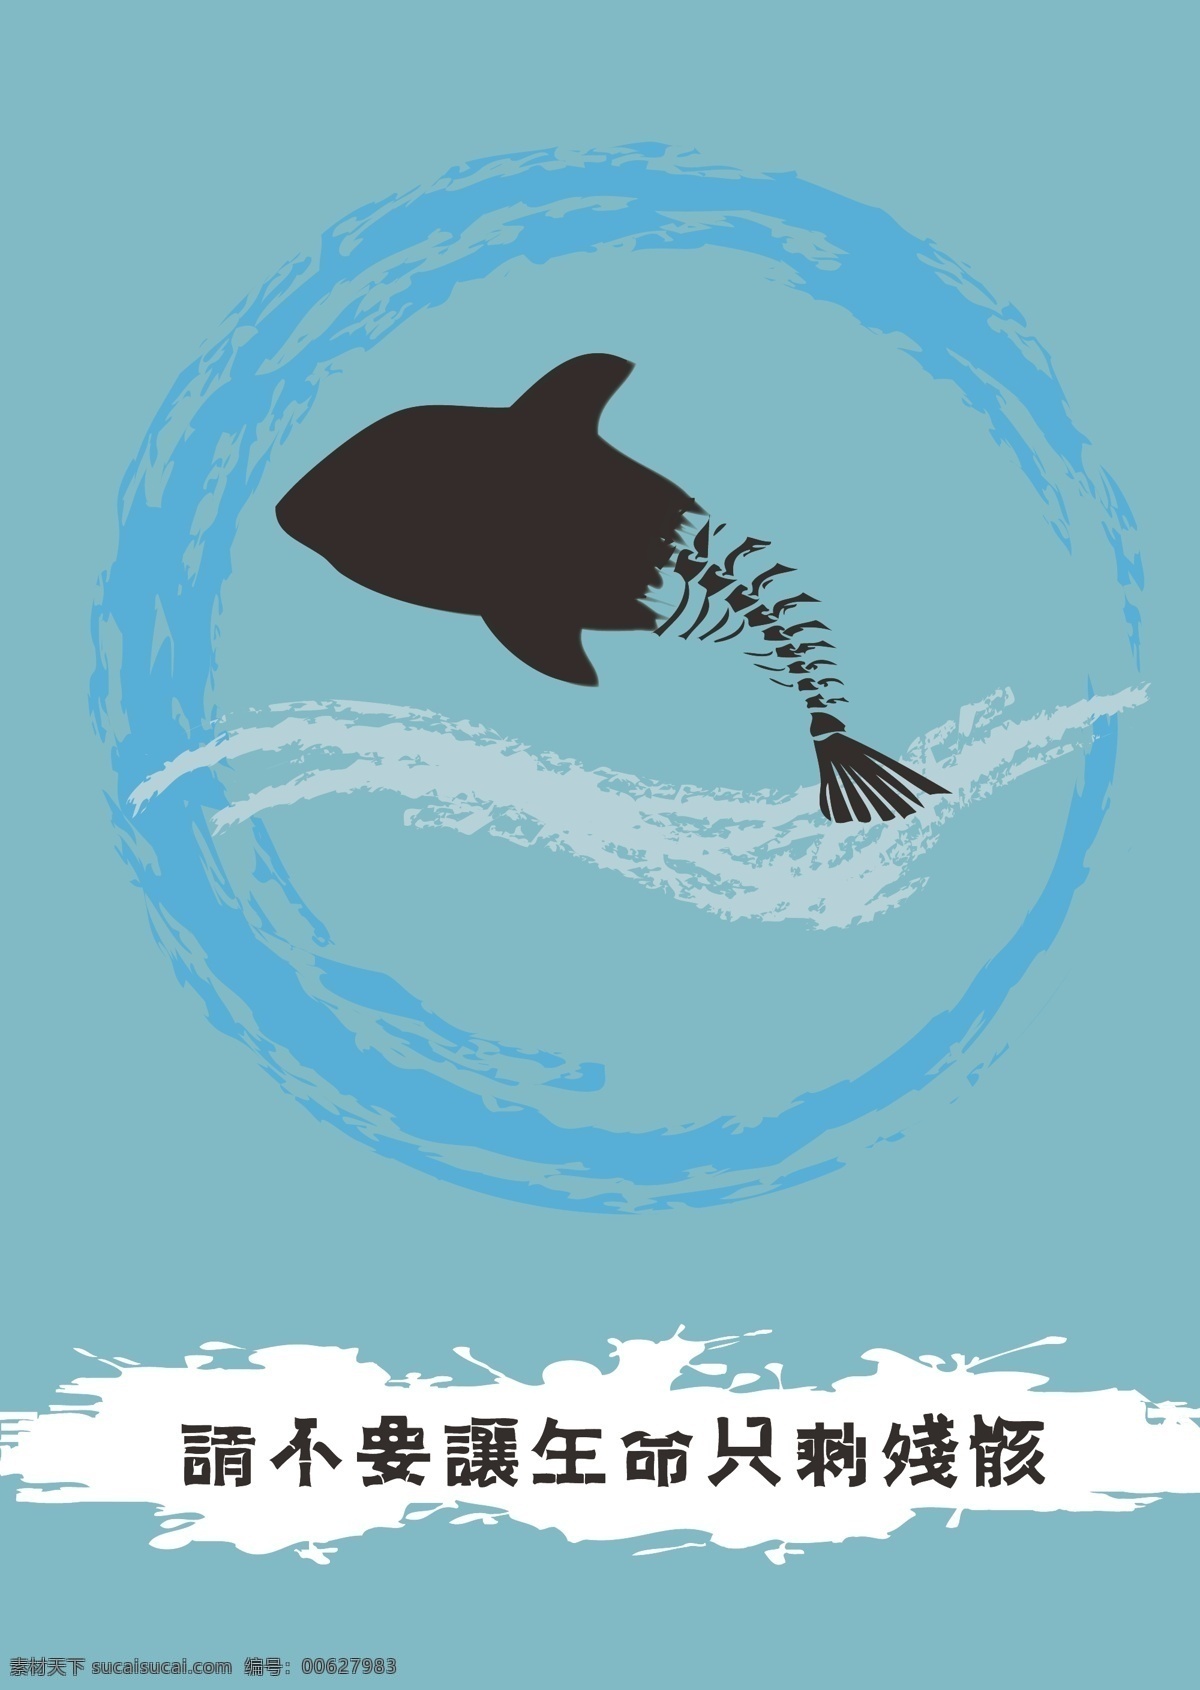 保护海洋 海报 环保海报 保护动物 环保 爱护生态 矢量